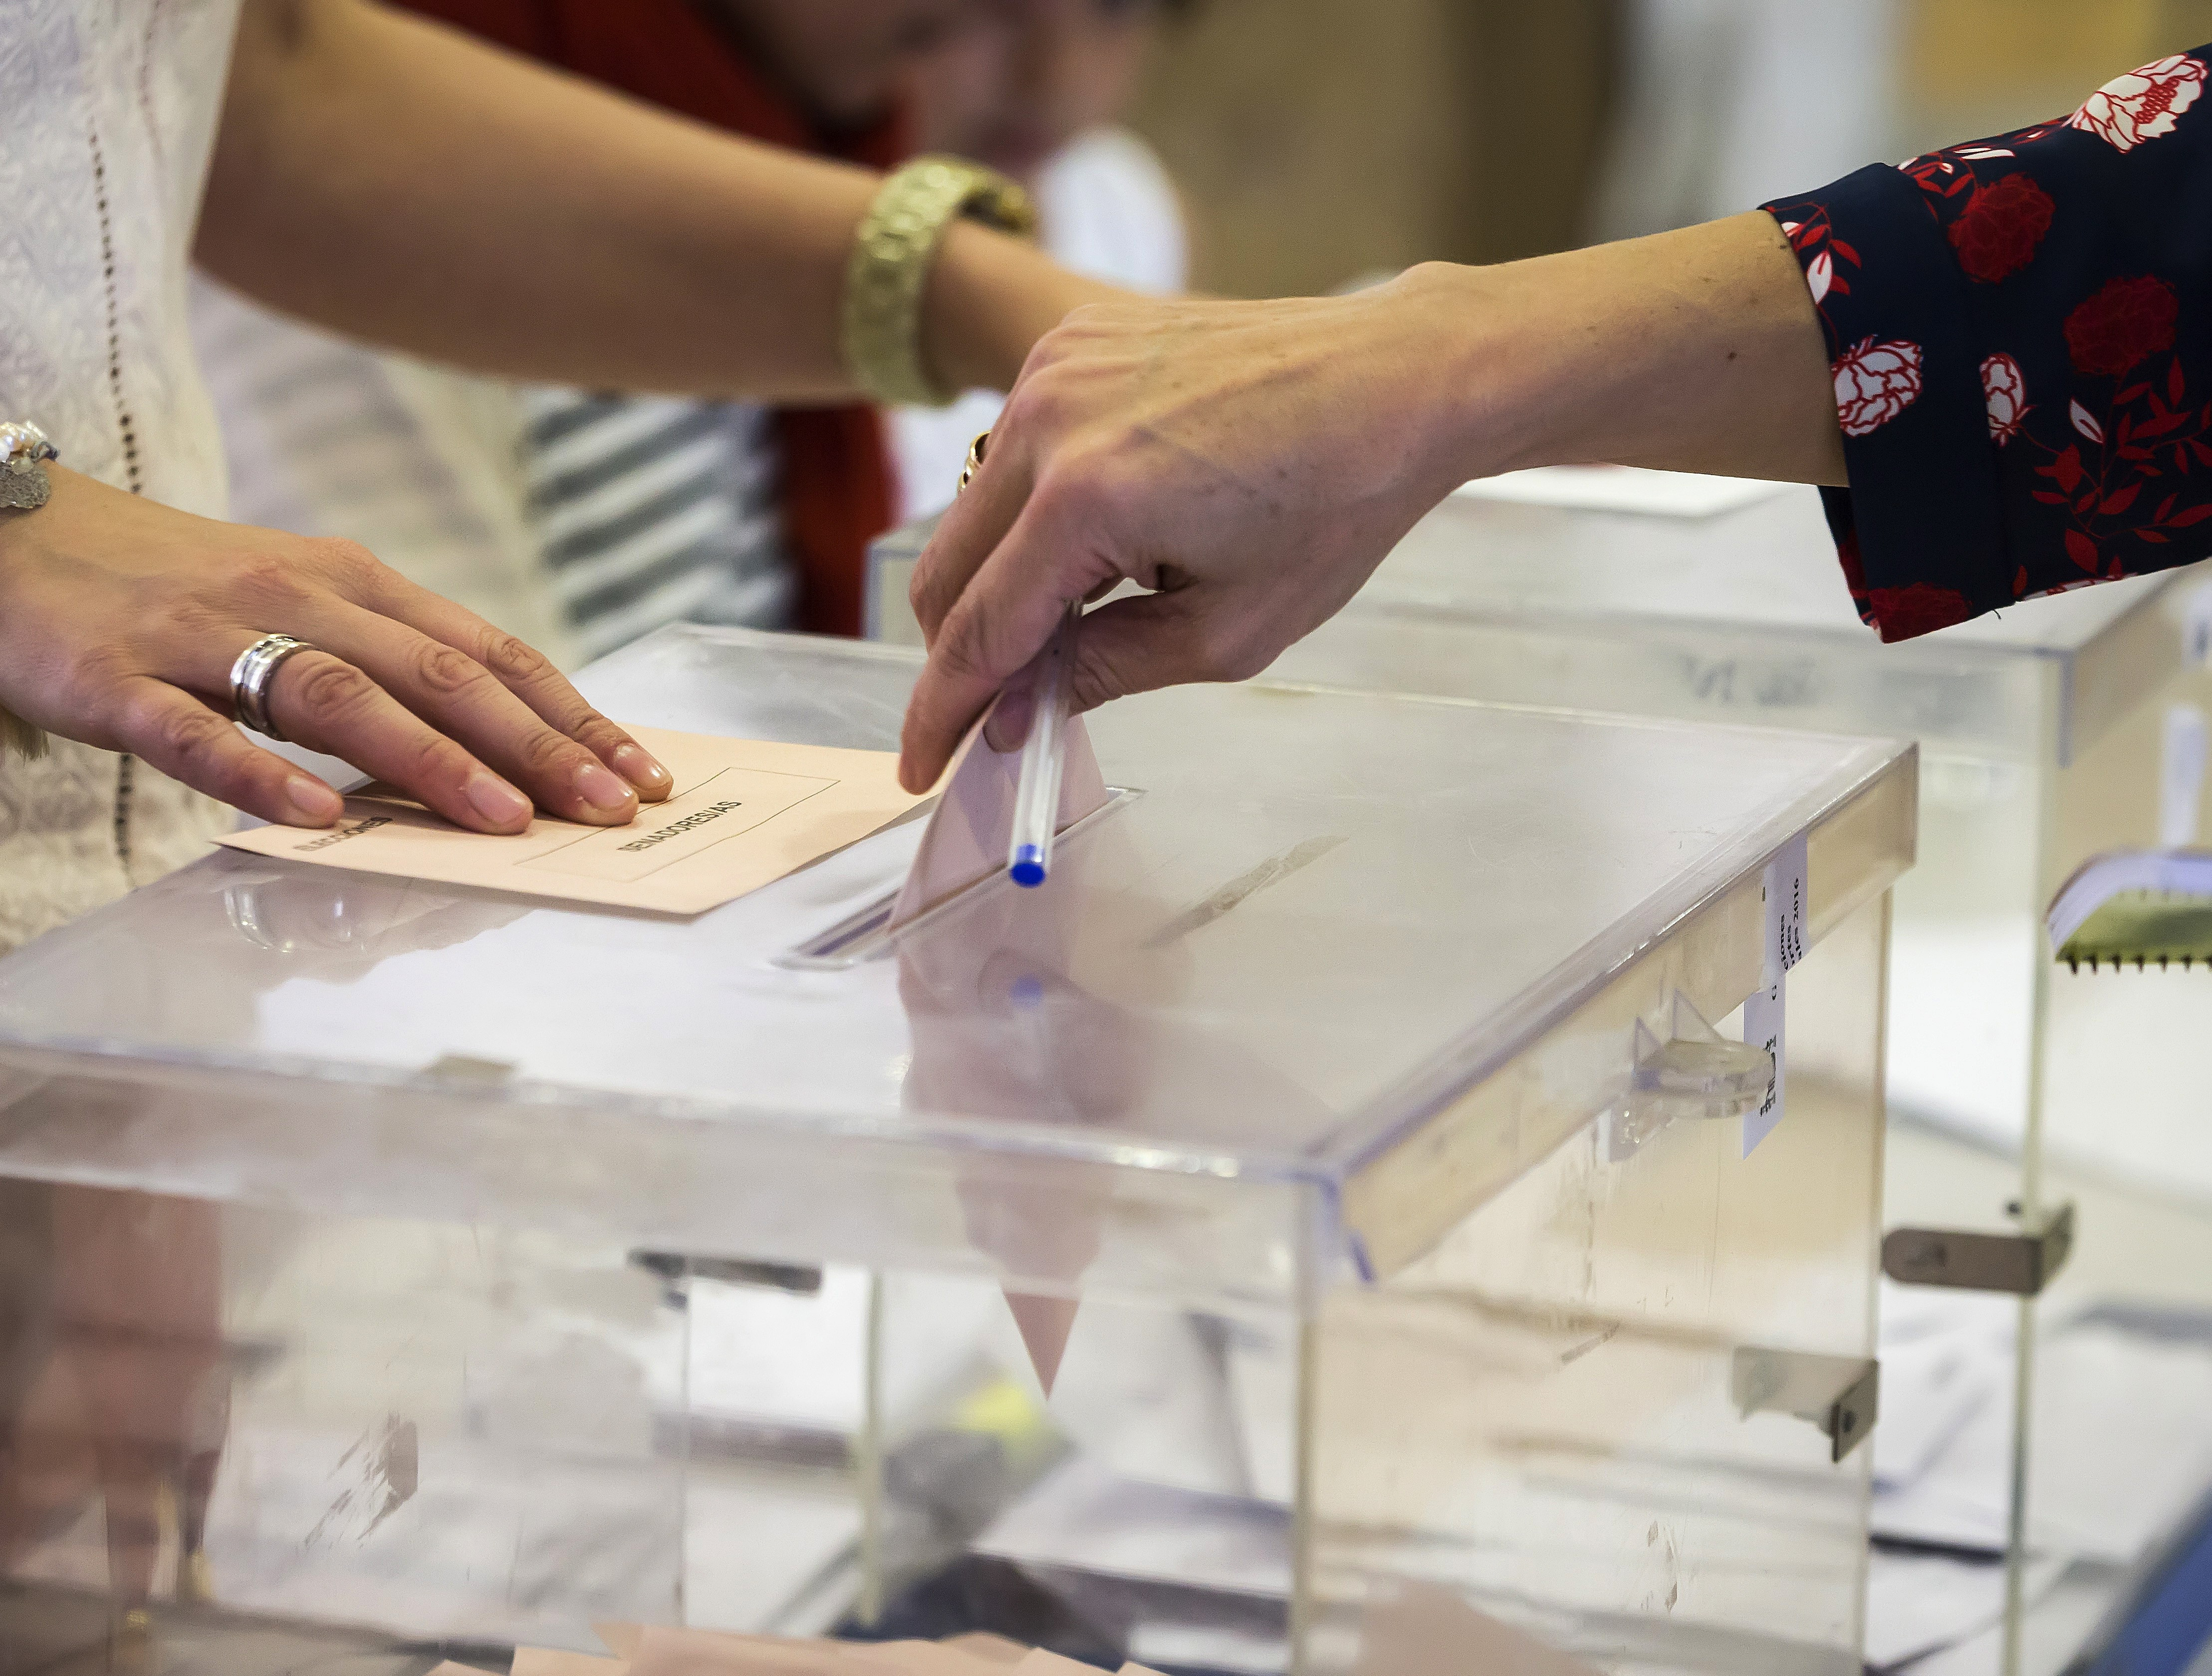 Imagen de archivo de una persona depositando su voto en una urna. EFE